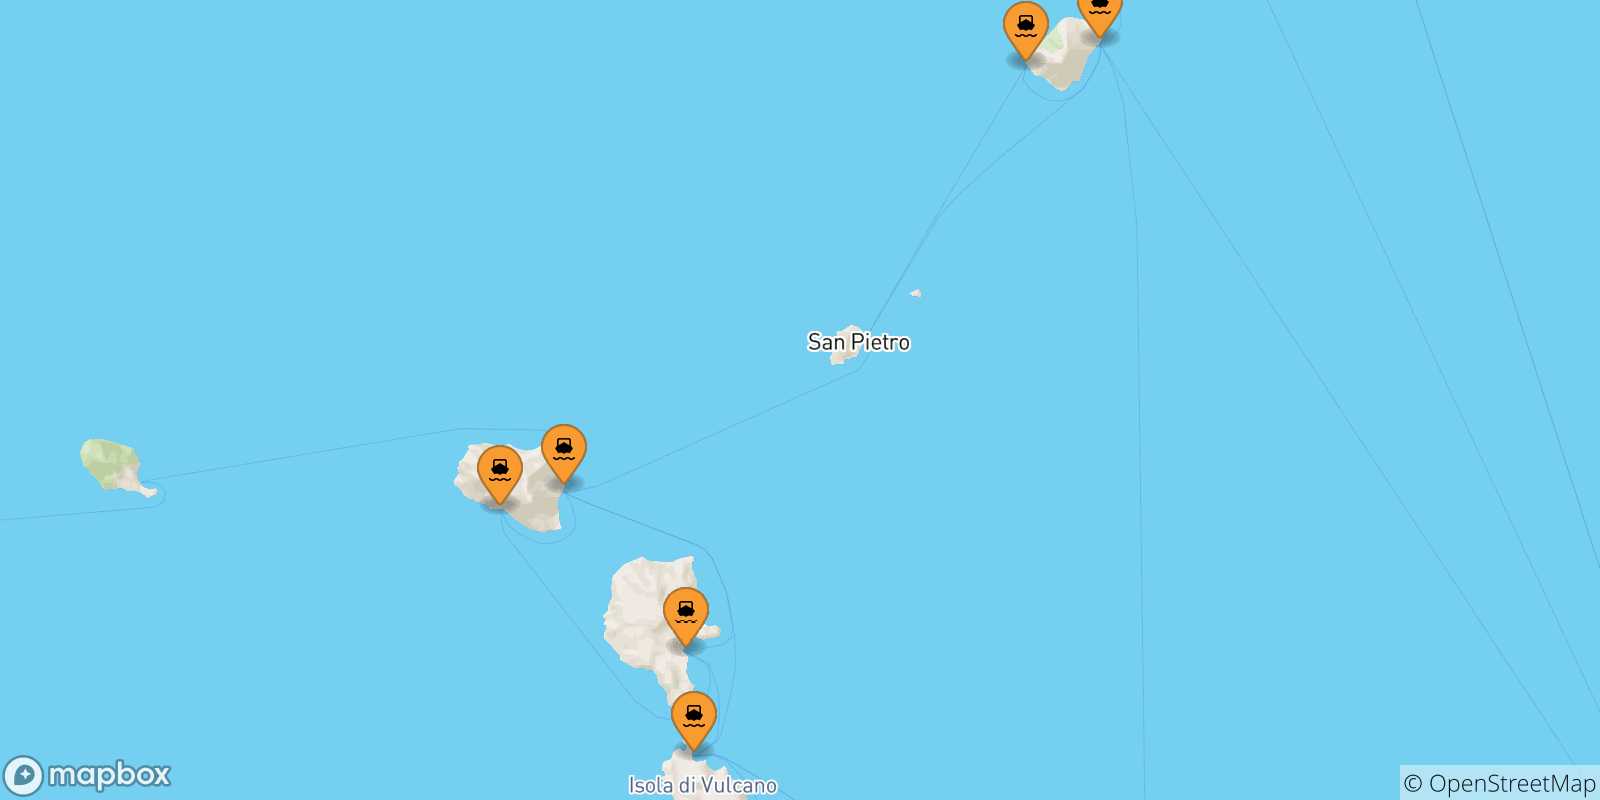 Mappa delle possibili rotte tra le Isole Eolie e Panarea